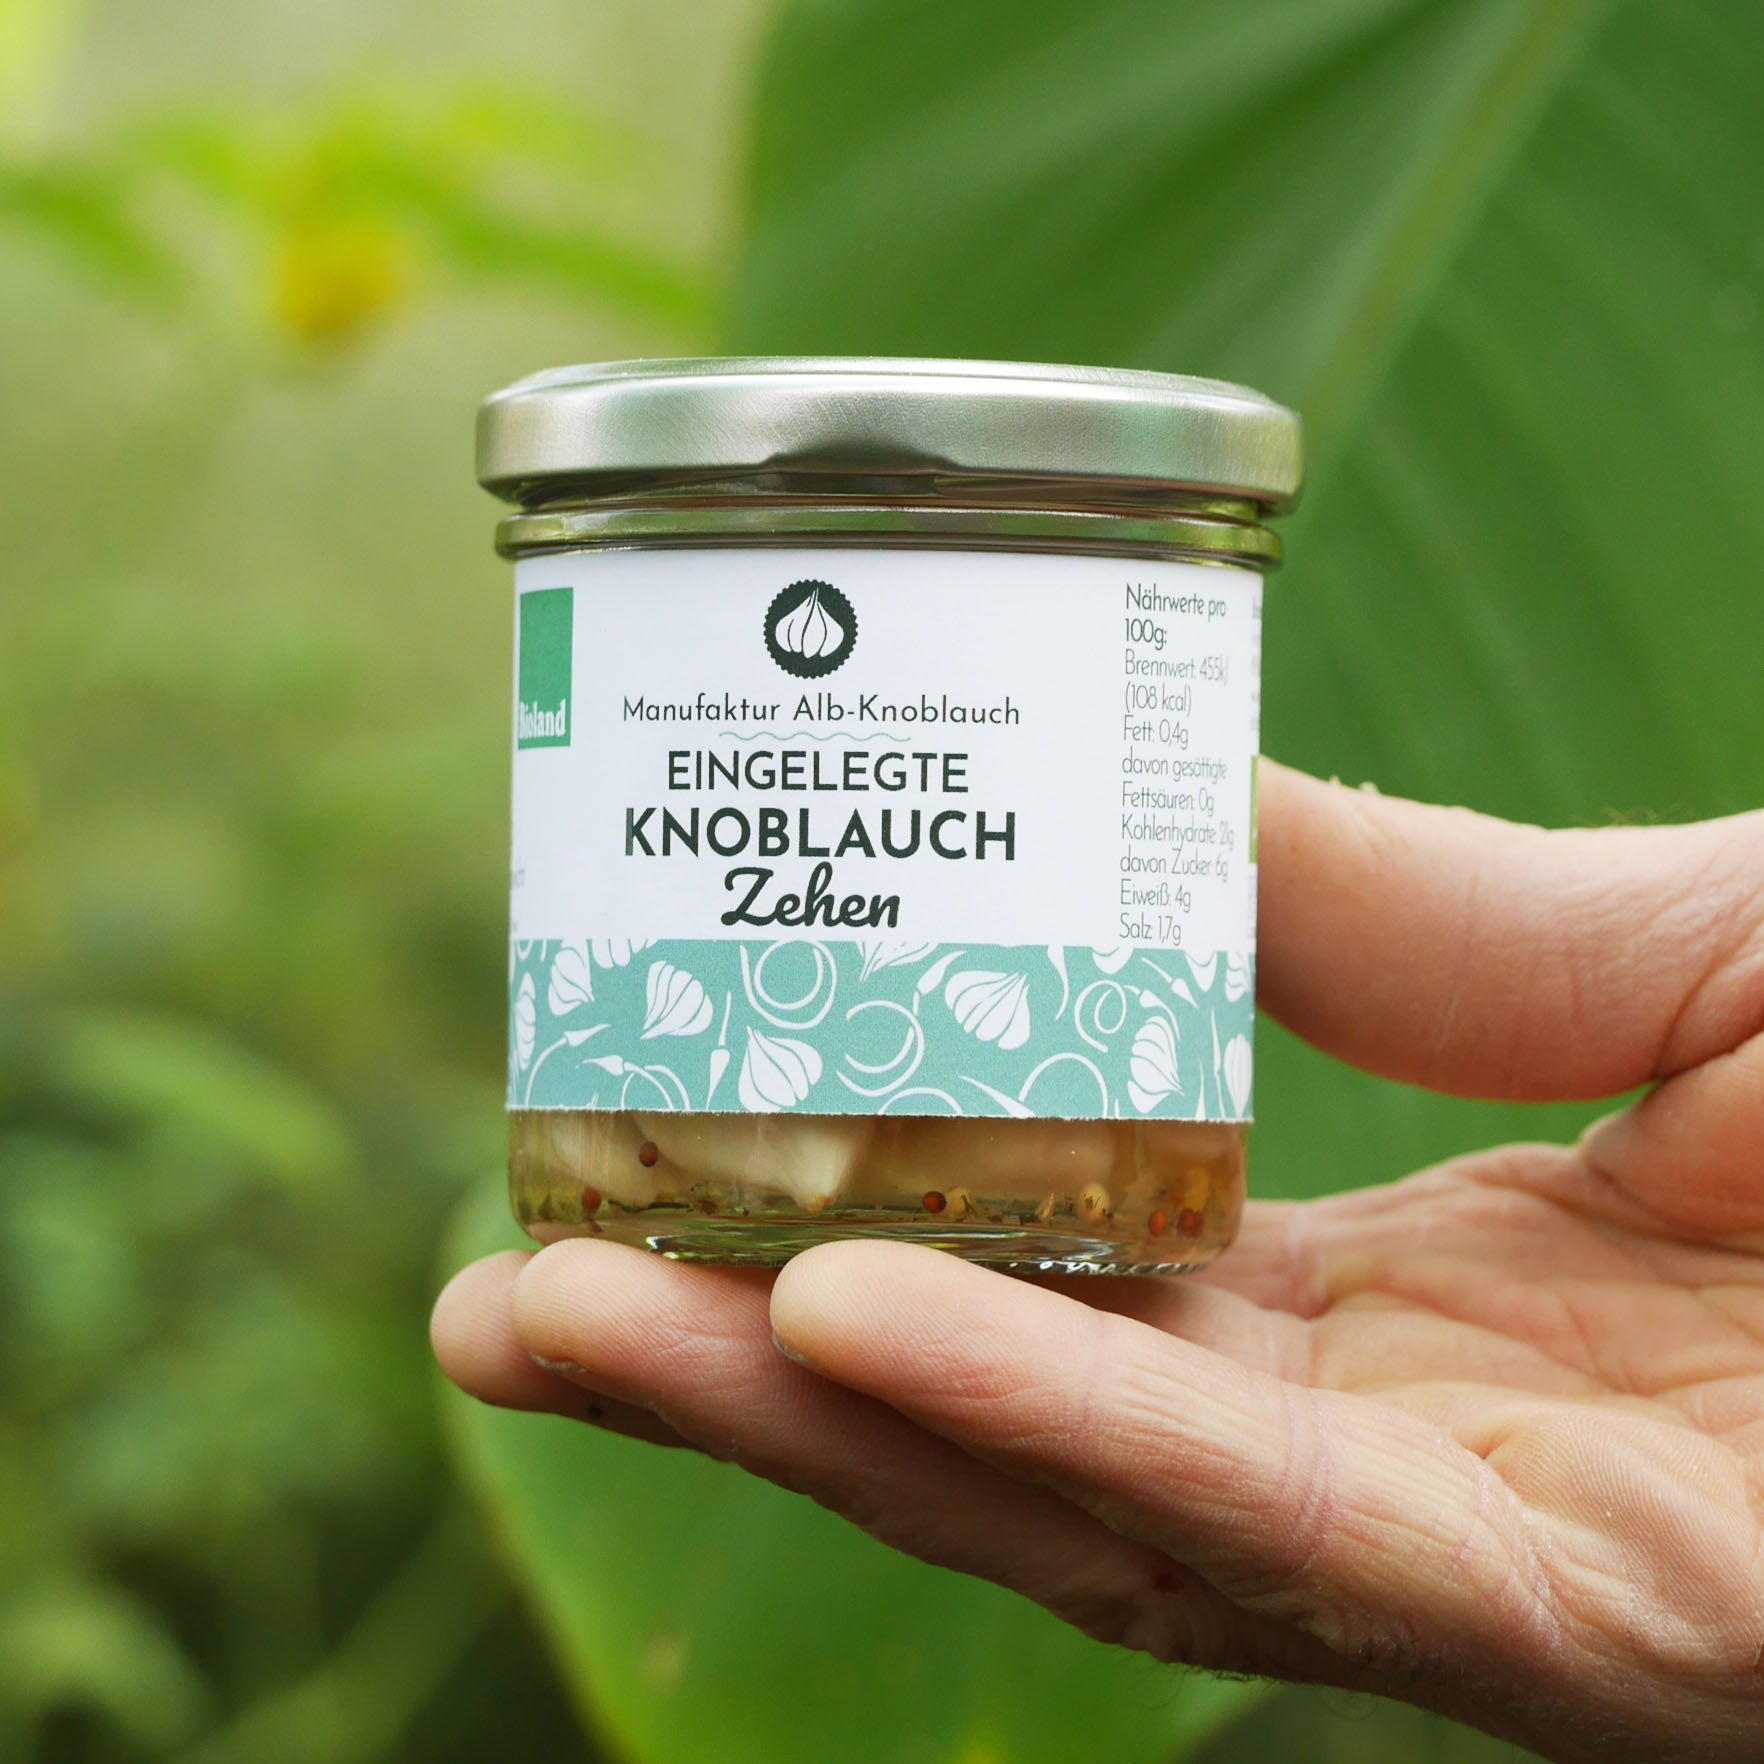 Pickled garlic cloves – Alb-Knoblauch